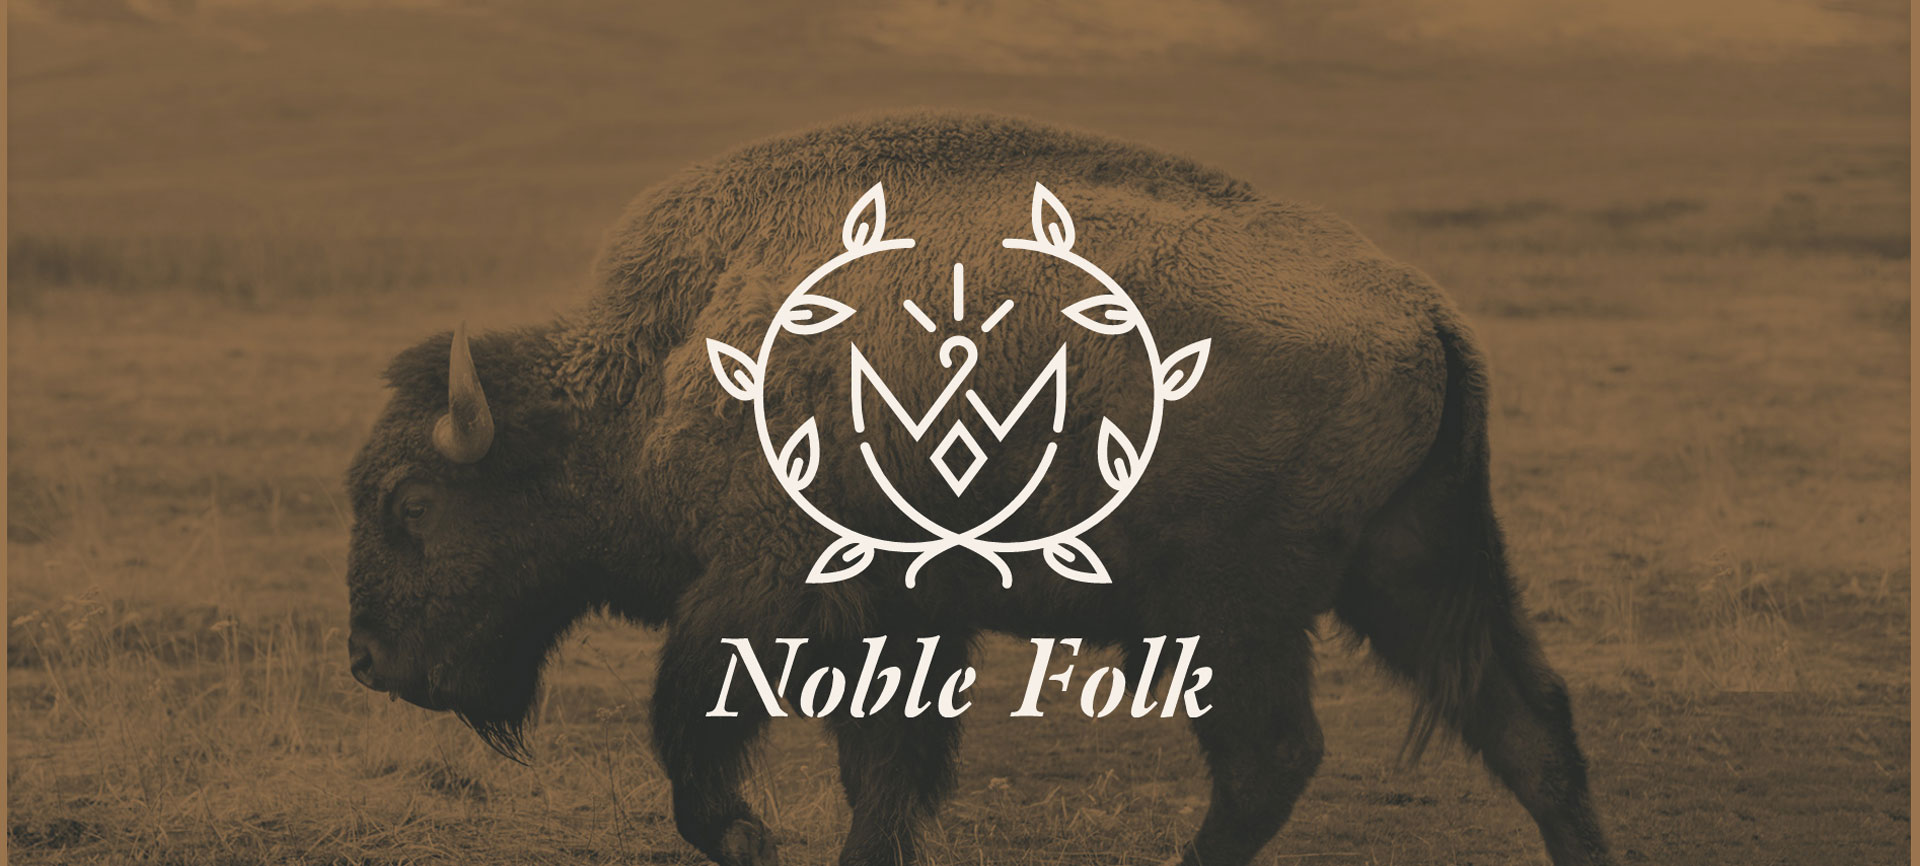 Noble Folk logo ontop of bison